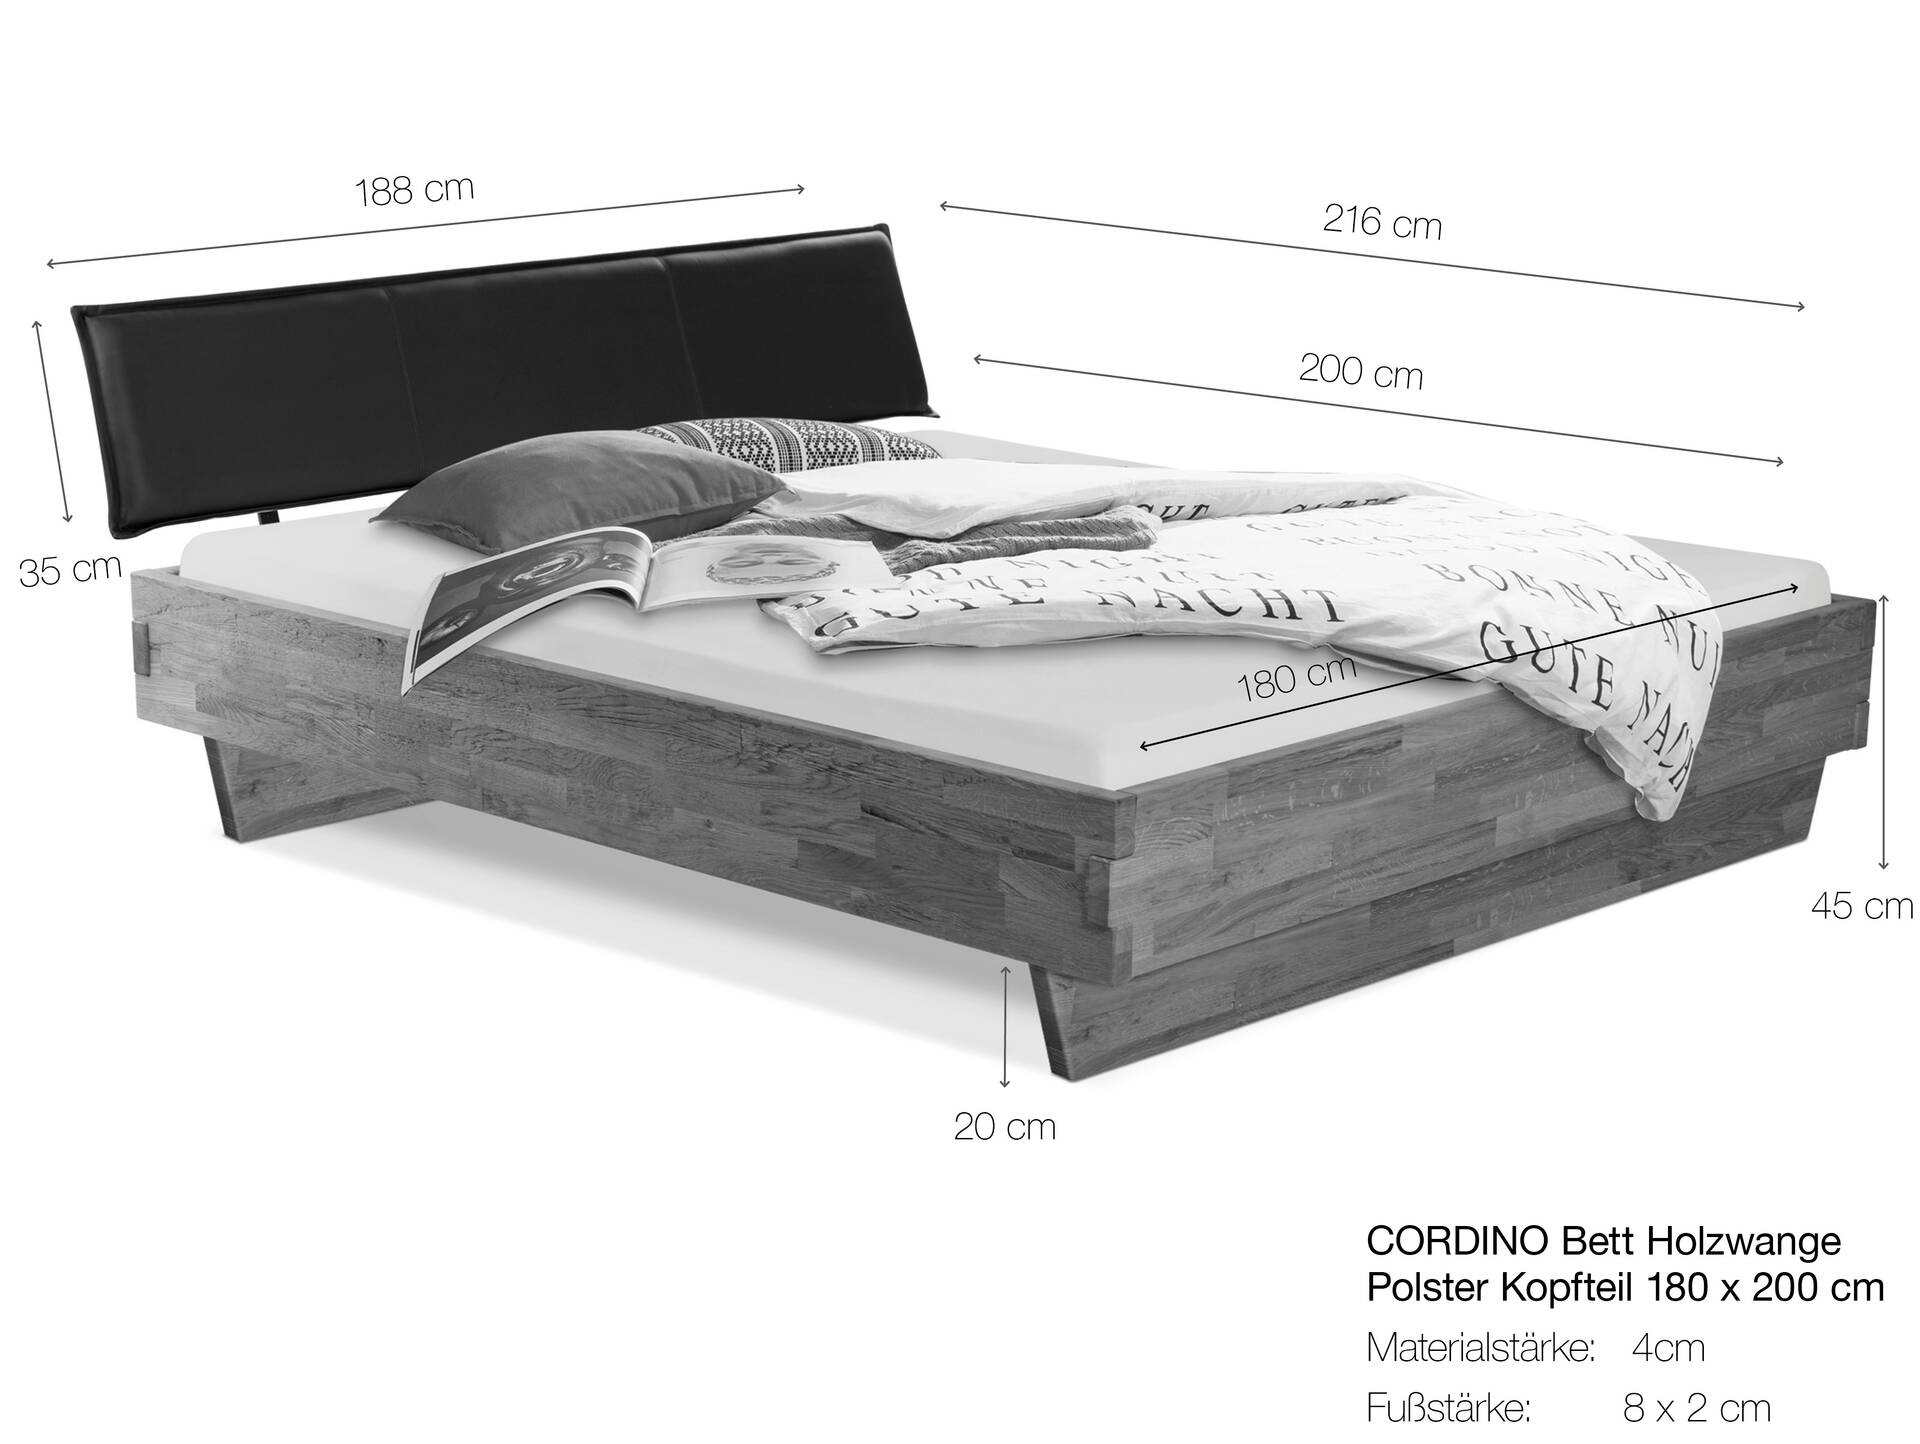 CORDINO Wangenbett aus Eiche mit Polster-Kopfteil, Material Massivholz 180 x 200 cm | Eiche lackiert | Stoff Braun | gebürstet